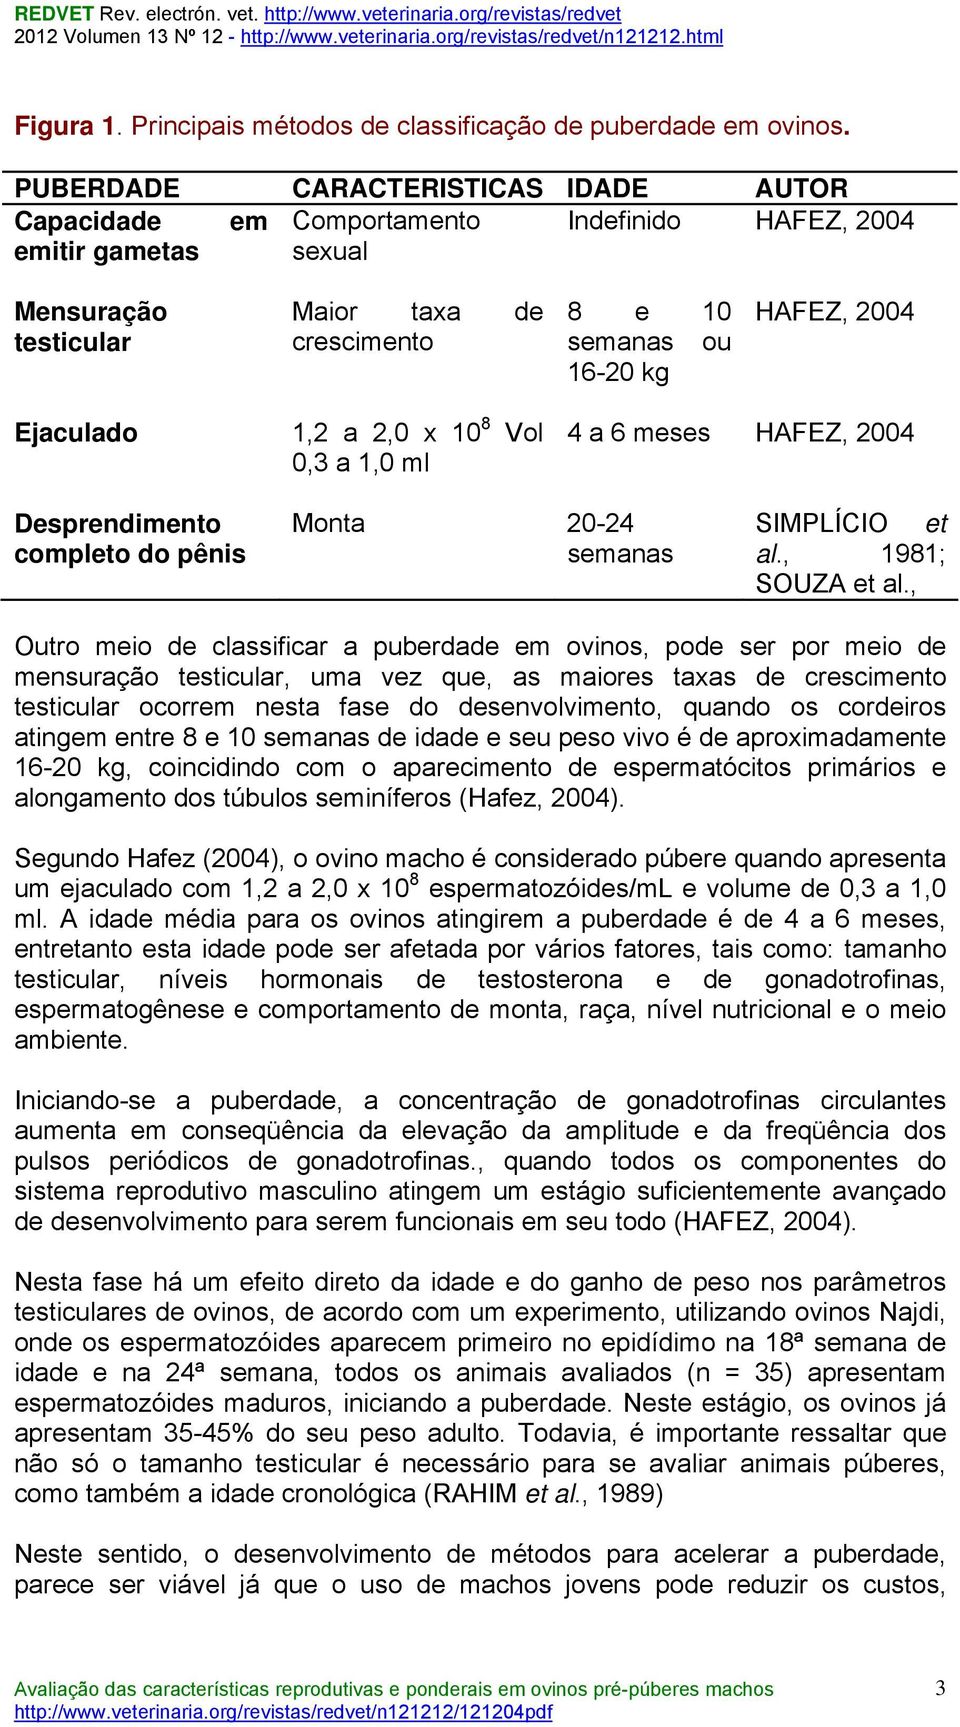 Ejaculado 1,2 a 2,0 x 10 8 Vol 0,3 a 1,0 ml 4 a 6 meses HAFEZ, 2004 Desprendimento completo do pênis Monta 20-24 semanas SIMPLÍCIO et al., 1981; SOUZA et al.